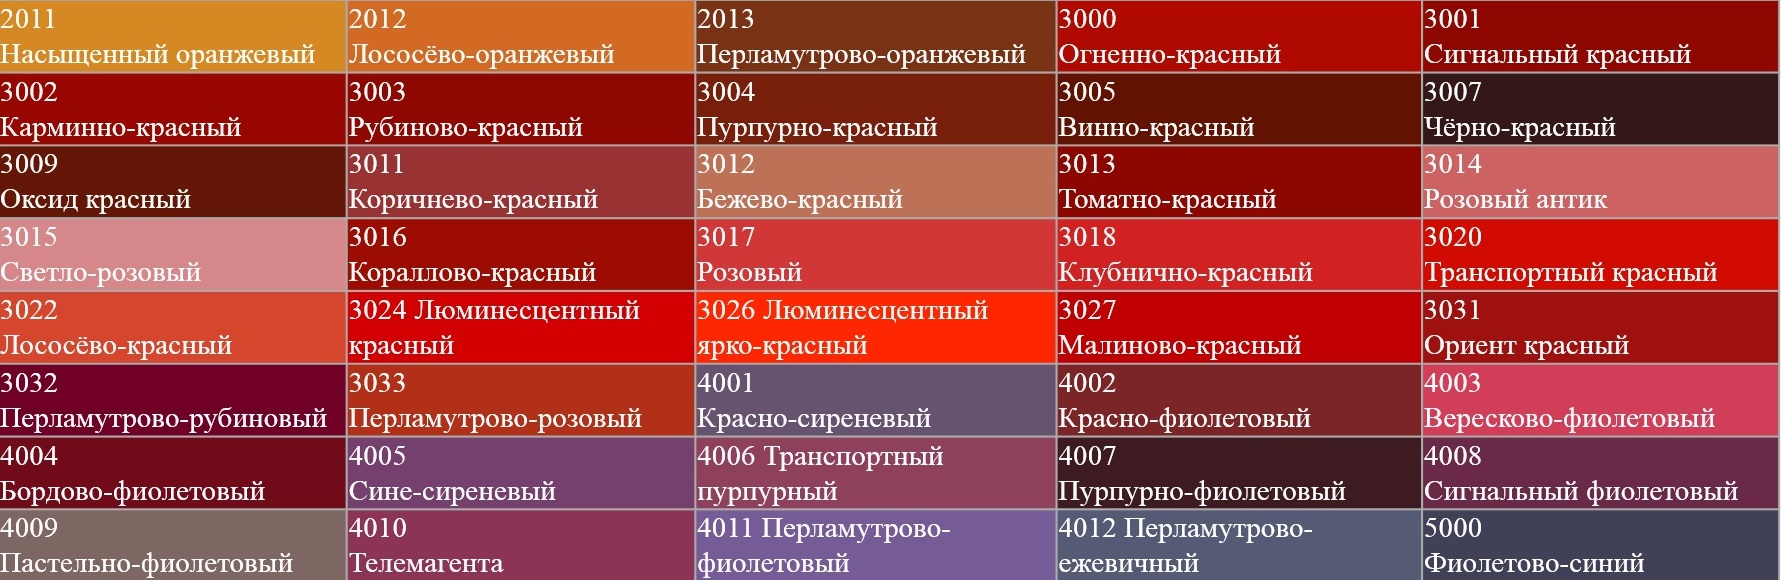 Оттенки красного цвета с названиями и картинками